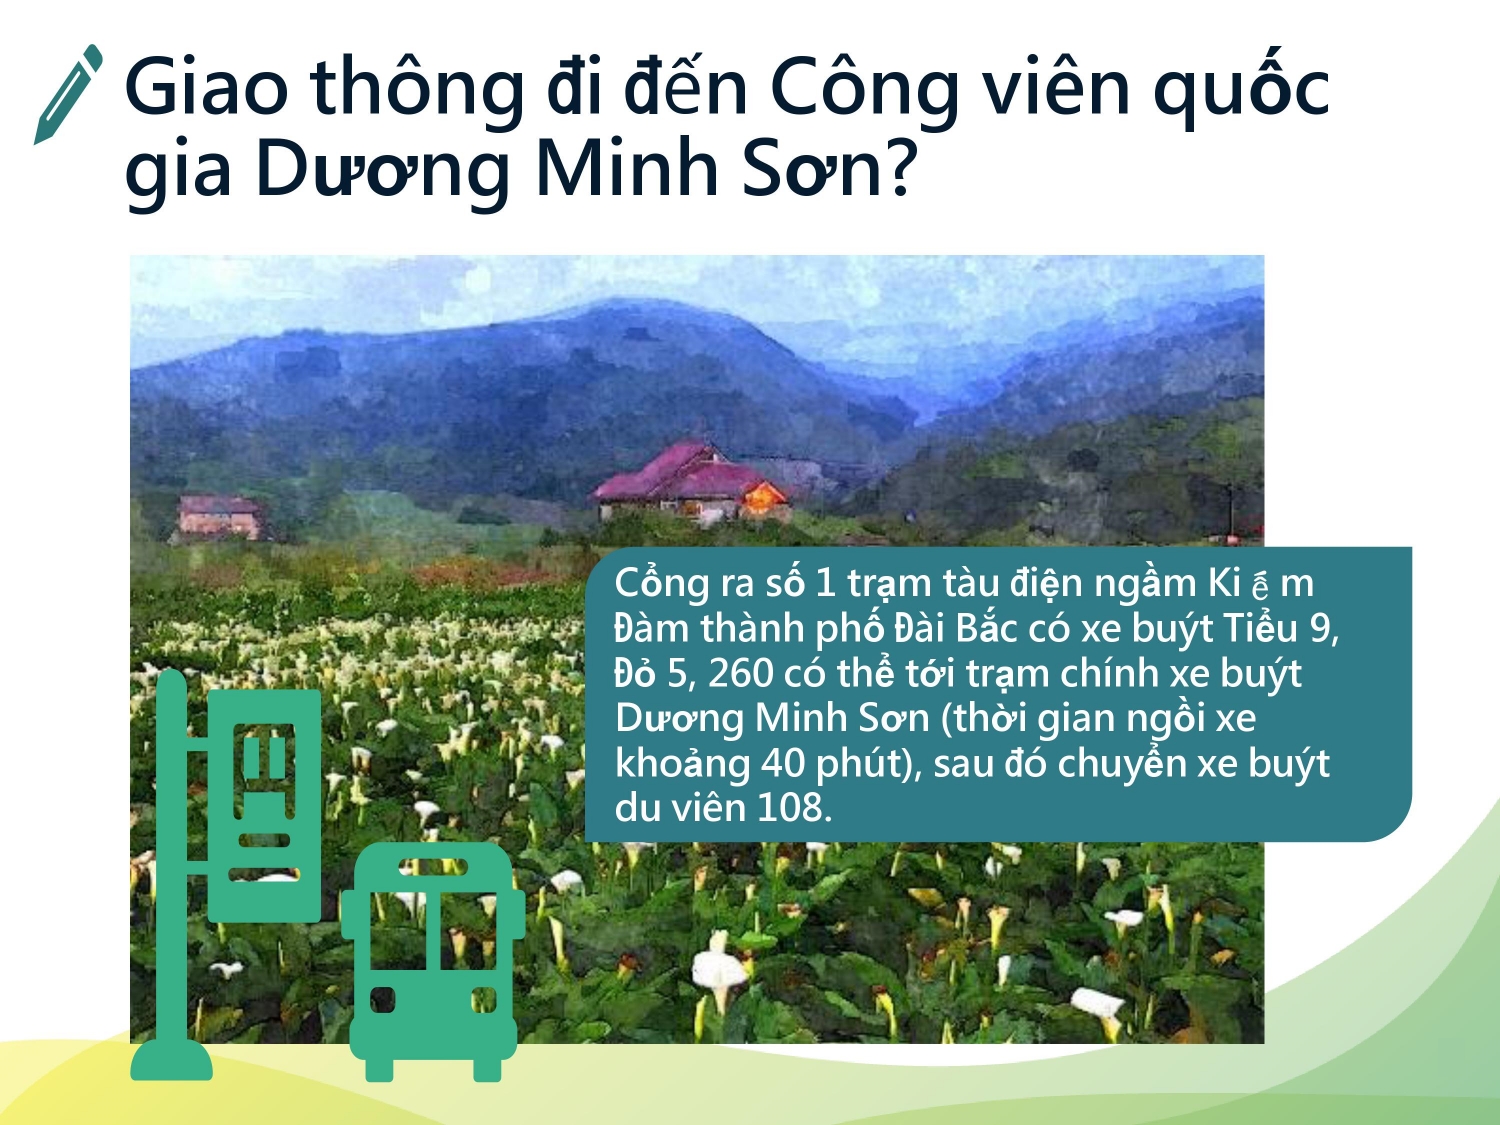 Giao thông đi đến Công viên quốc gia Dương Minh Sơn?